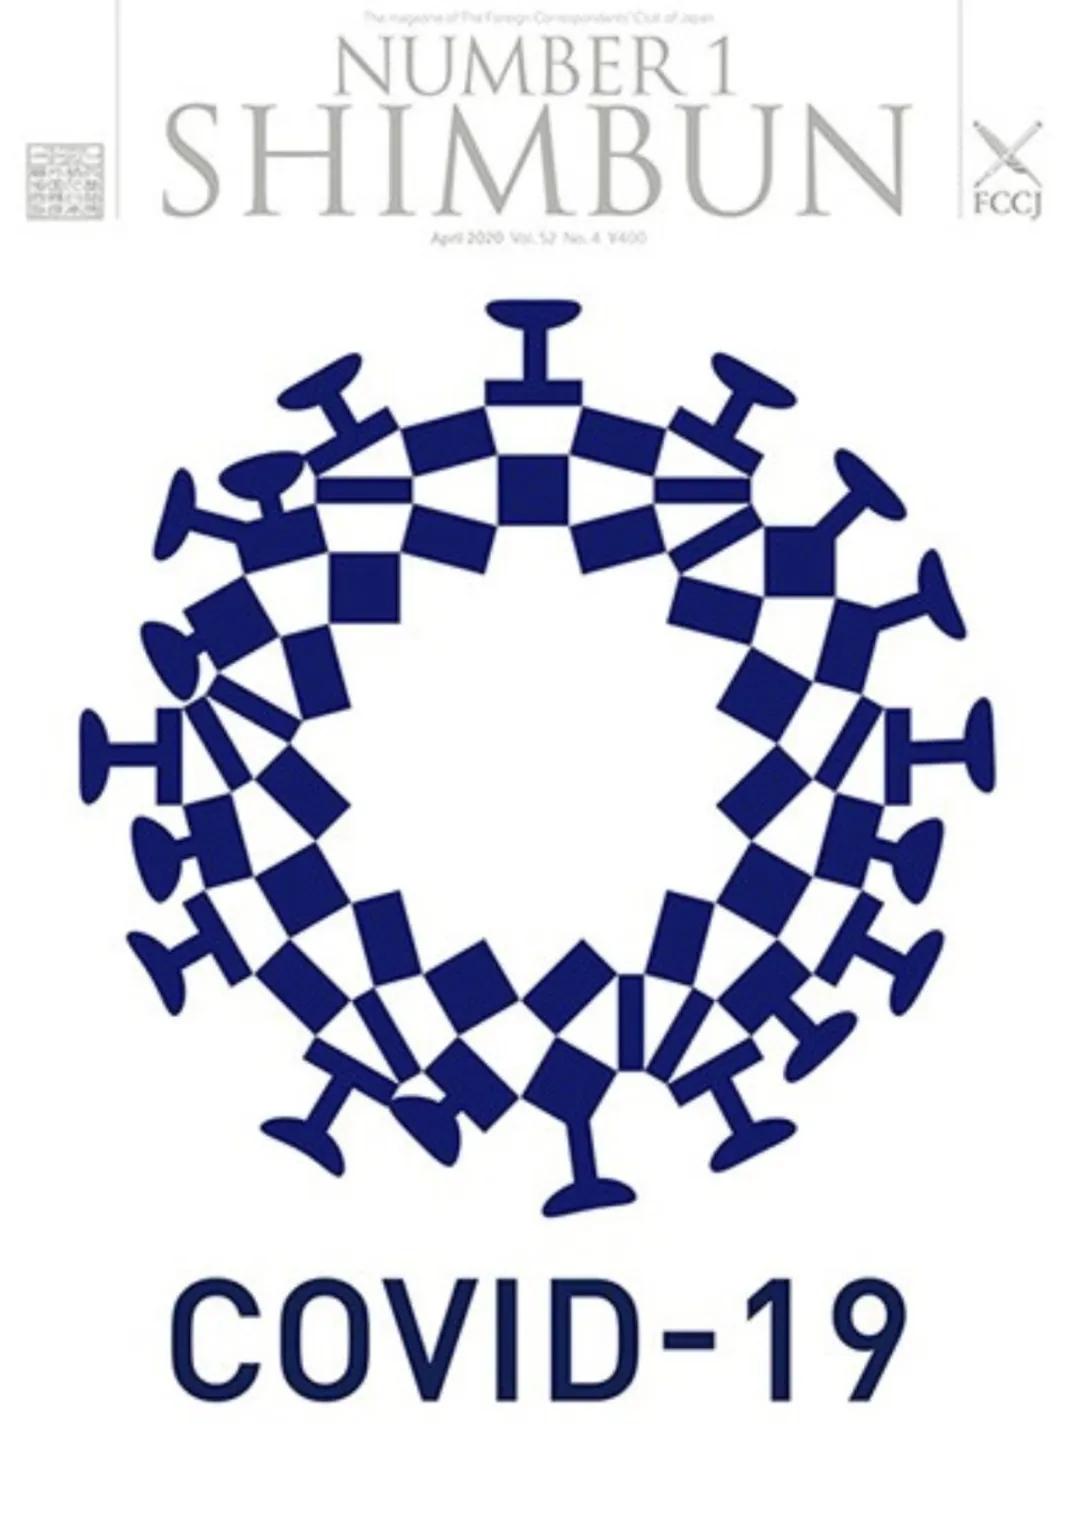 东京奥运会徽变被设计成冠状病毒，“太露骨了”，日本网友炸了